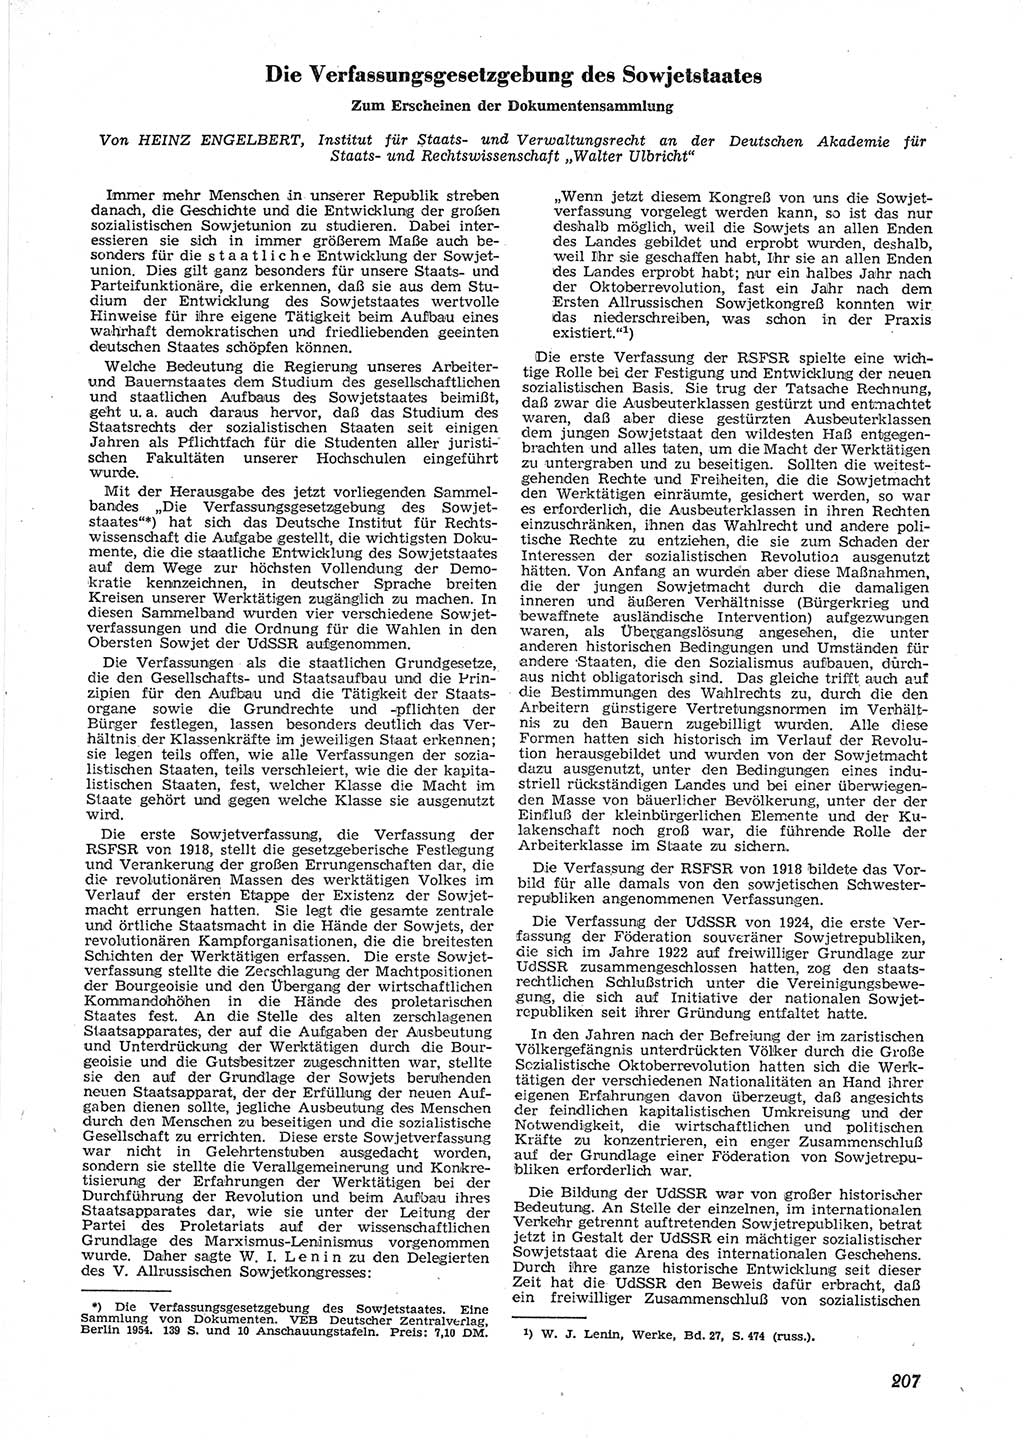 Neue Justiz (NJ), Zeitschrift für Recht und Rechtswissenschaft [Deutsche Demokratische Republik (DDR)], 9. Jahrgang 1955, Seite 207 (NJ DDR 1955, S. 207)